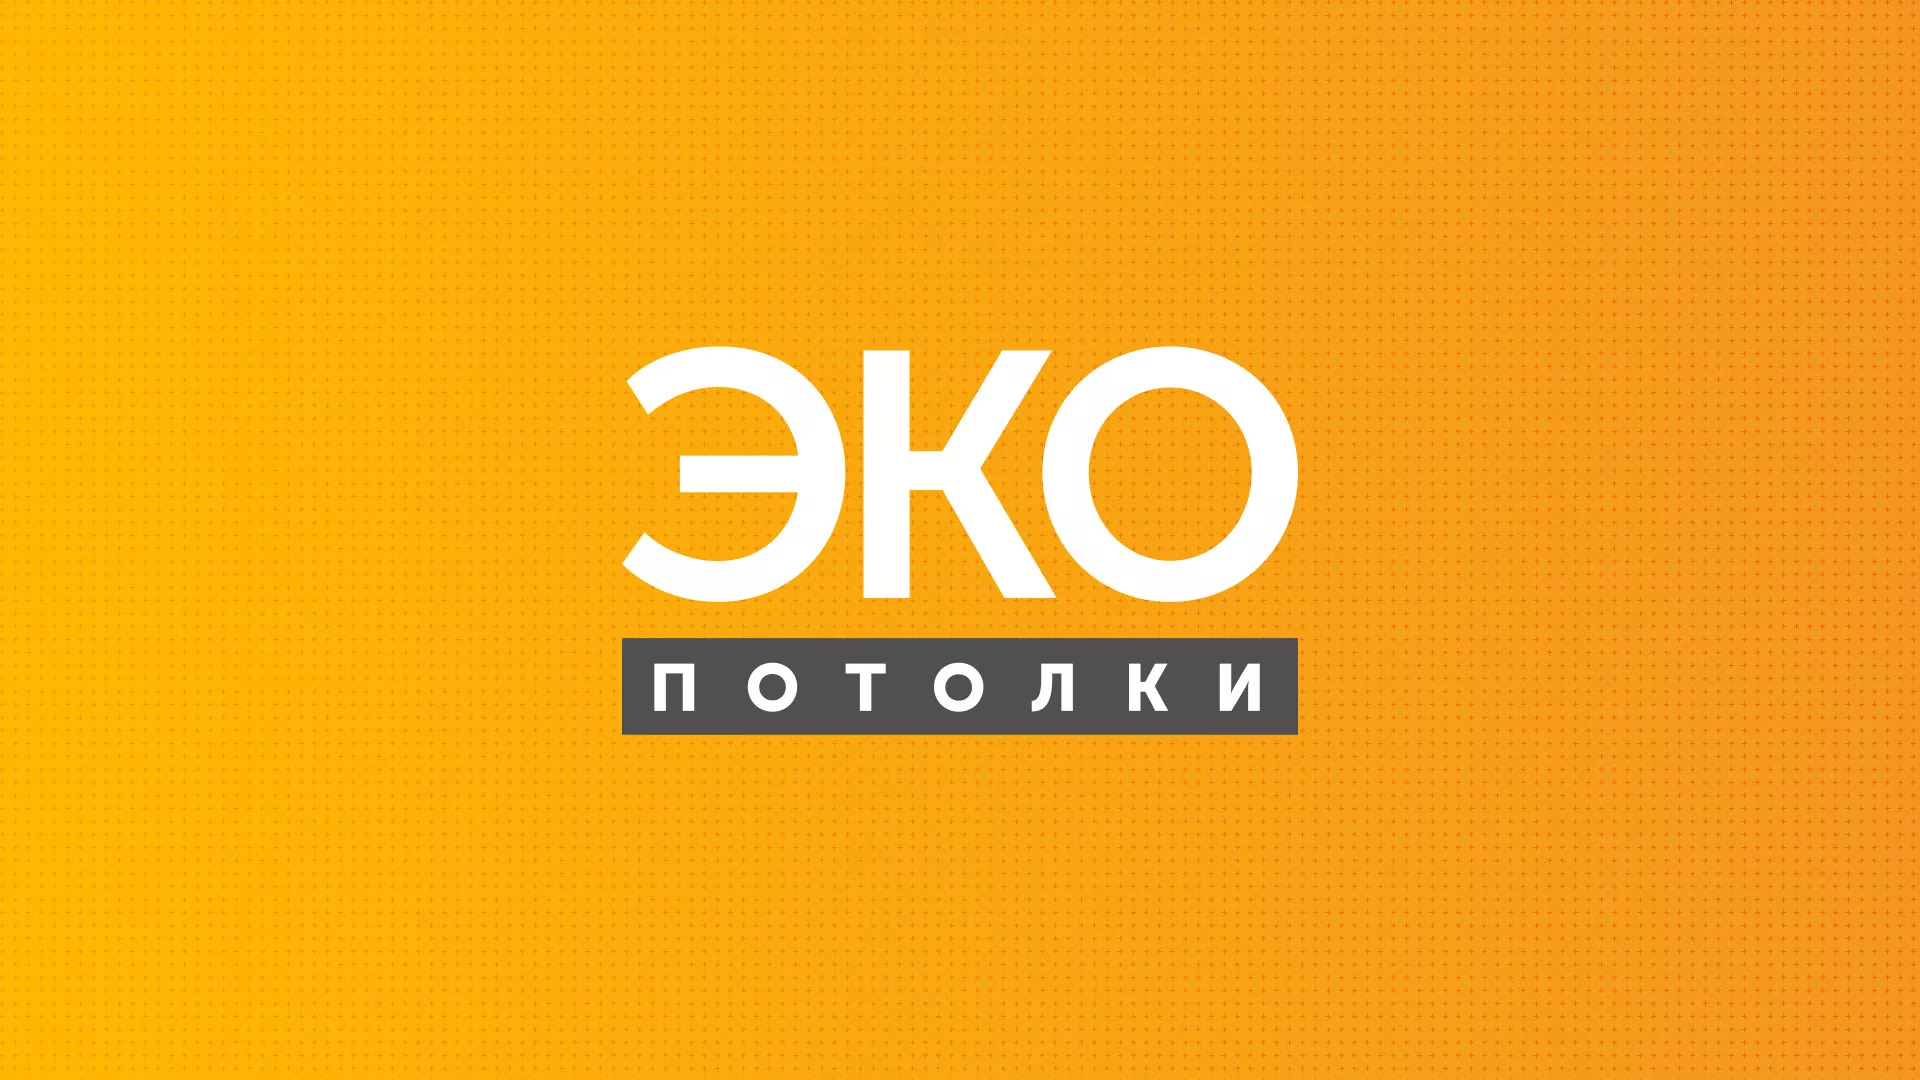 Разработка сайта по натяжным потолкам «Эко Потолки» в Славянске-на-Кубани